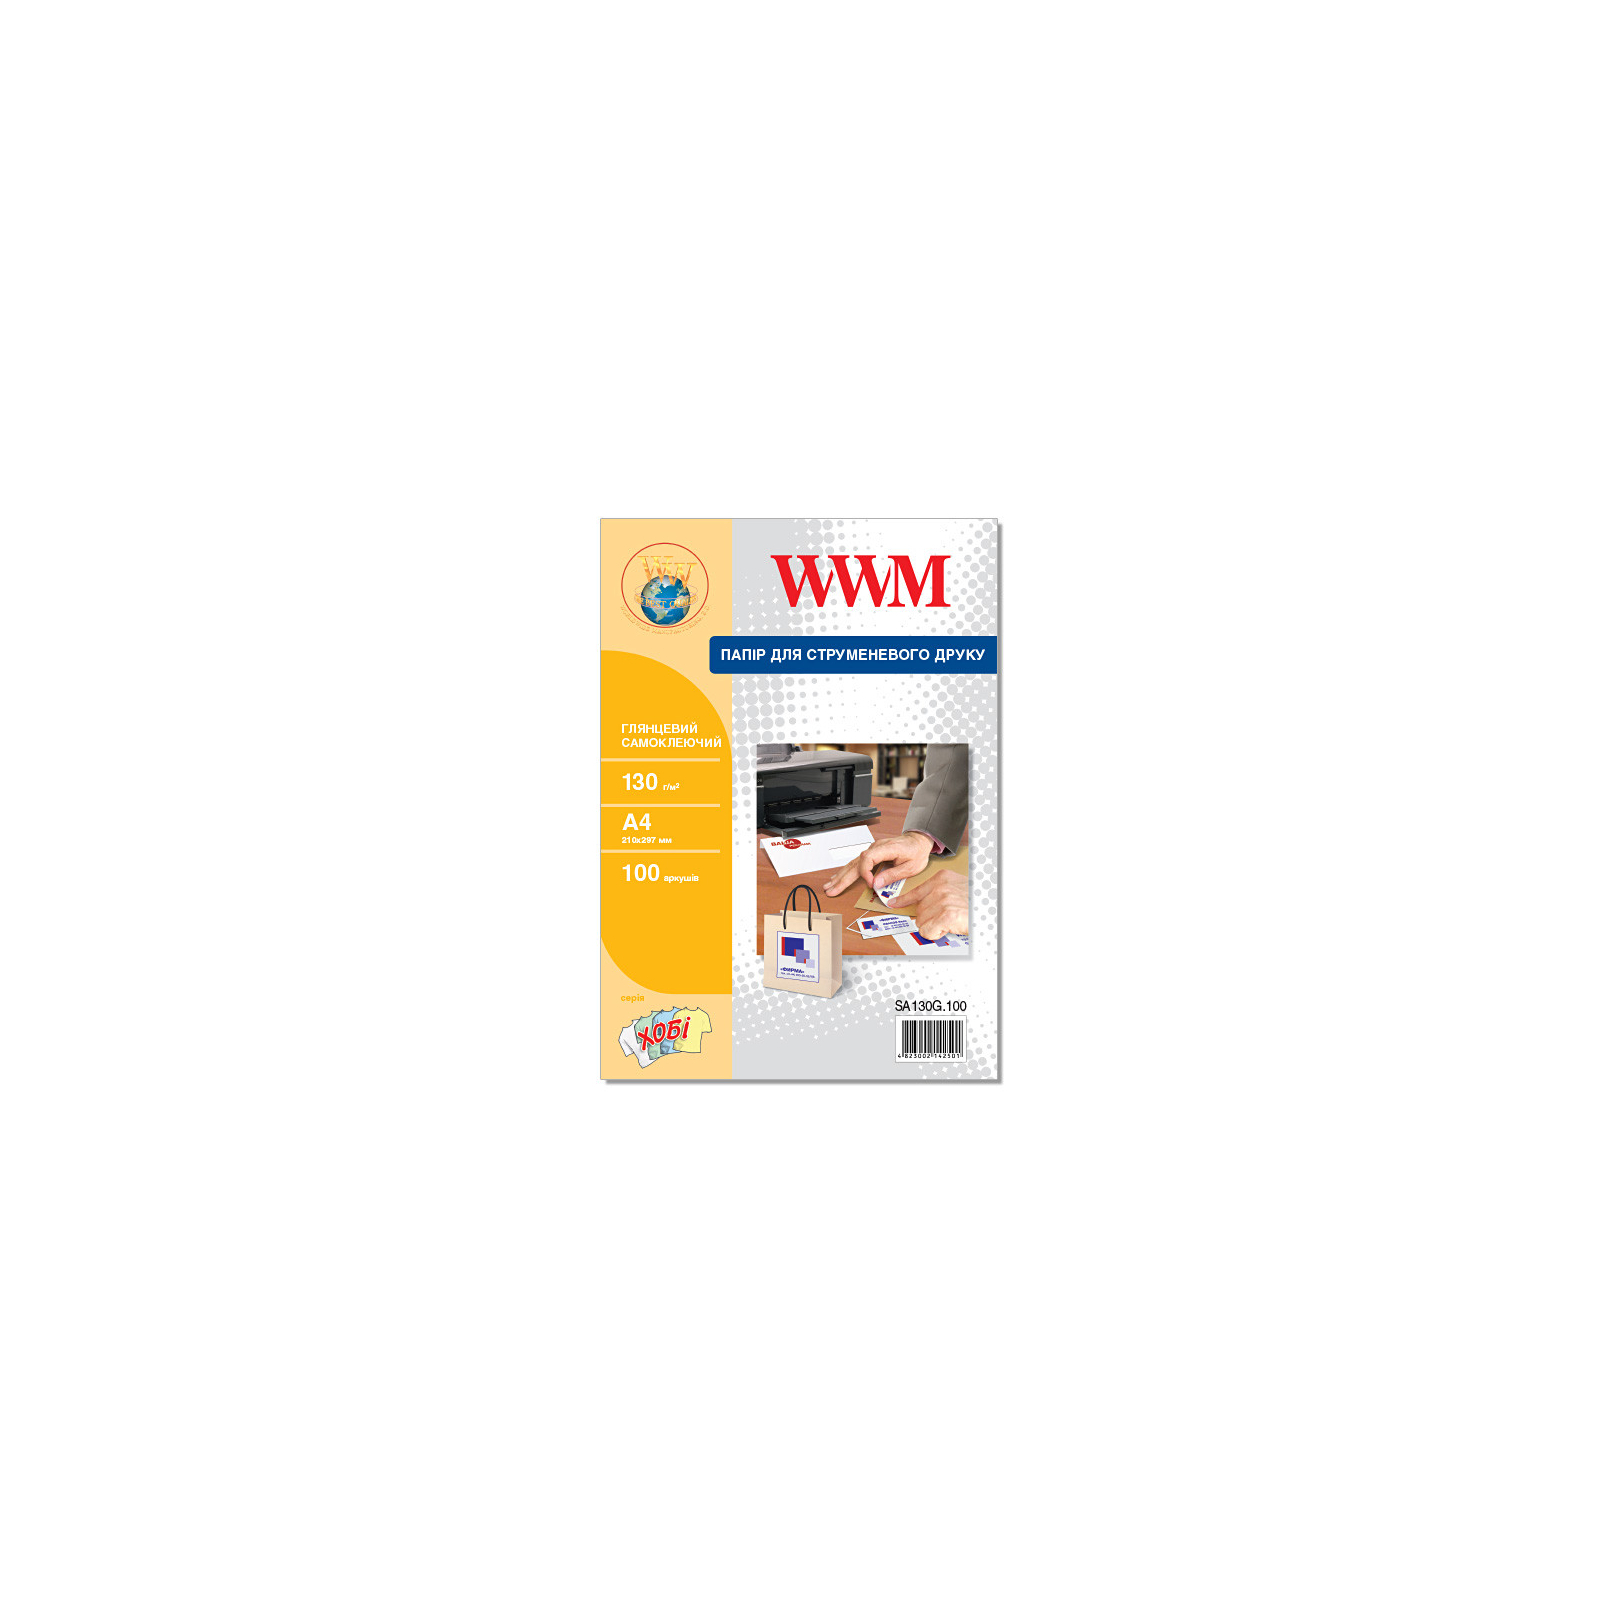 Фотобумага WWM A4, Glossy, 130г, самоклейка, 100с (SA130G.100)